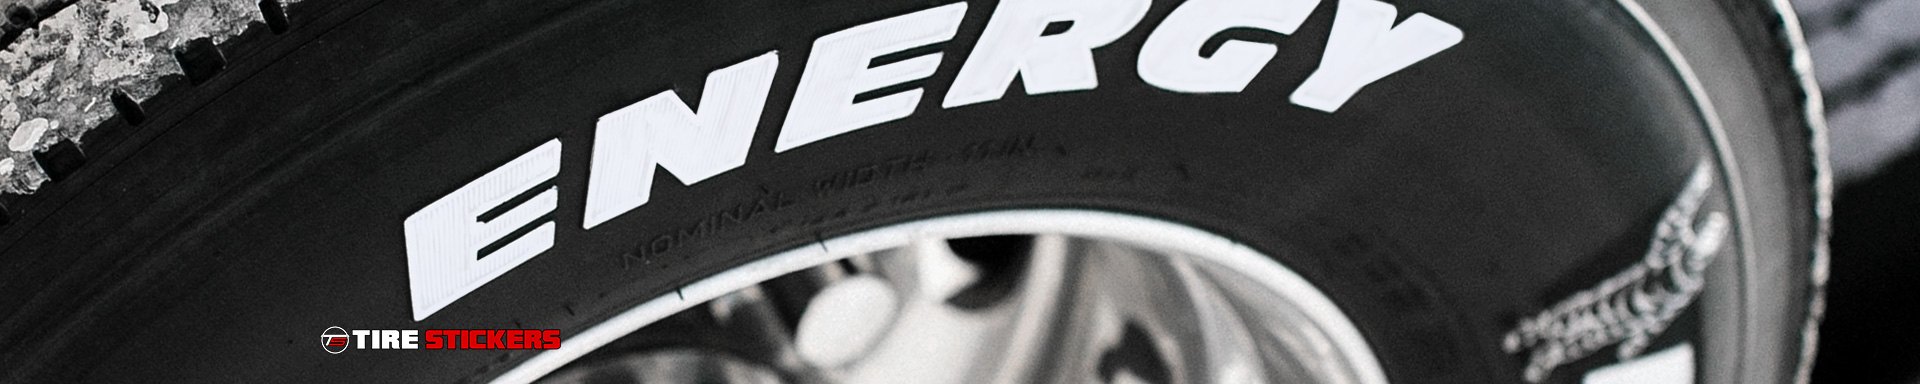 Tire Stickers Wheel & Tire Accessories